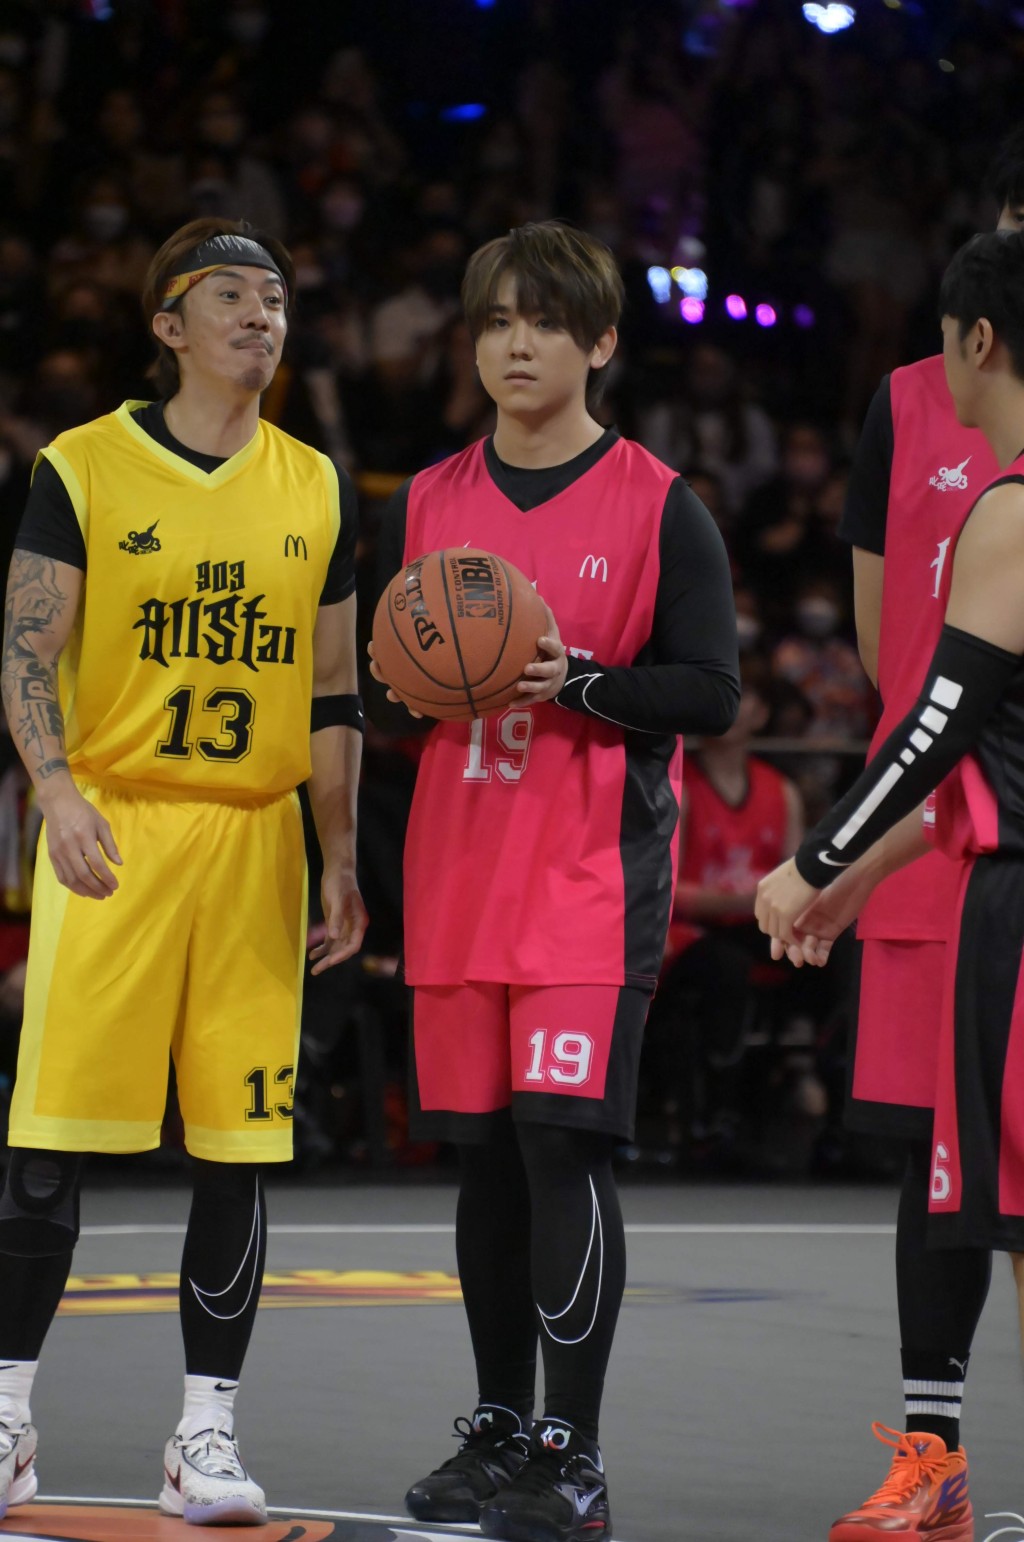 姜涛去年11月参加《903 AllStar 篮球赛》不慎扭伤右膝伤及旧患，导致膝关节十字韧带撕裂。